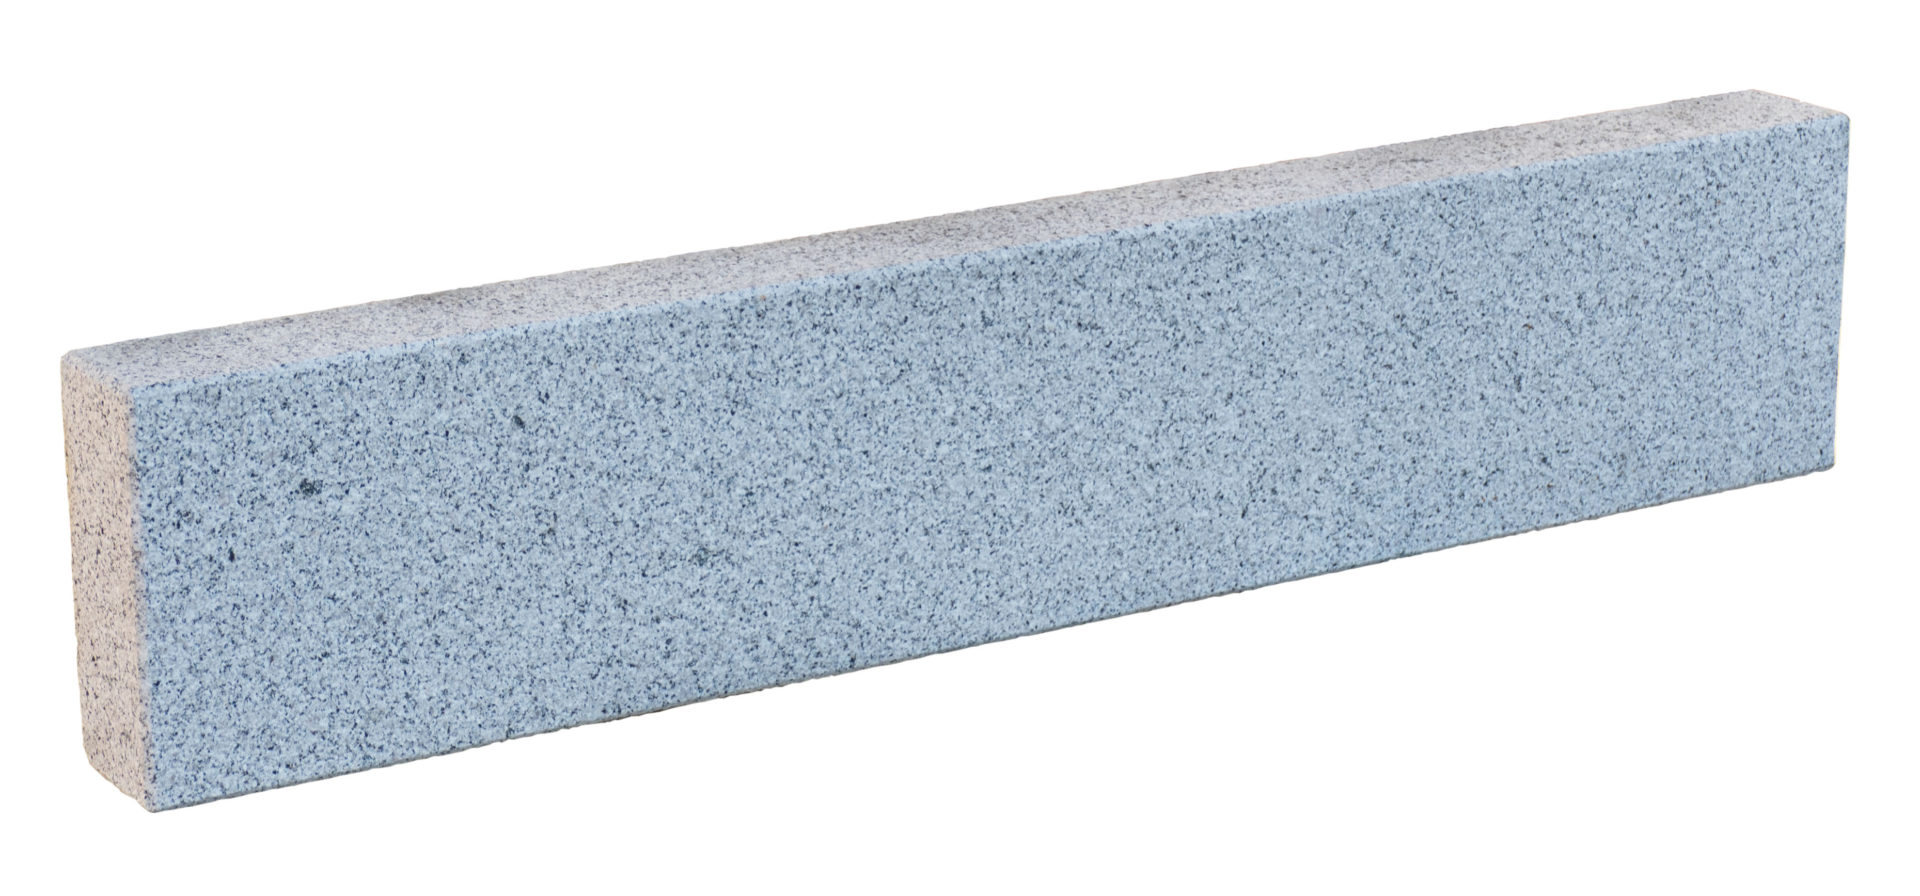 deevert - bordure en pierre naturelle – granit – dimensions 100 x 20 x 8 cm - 02